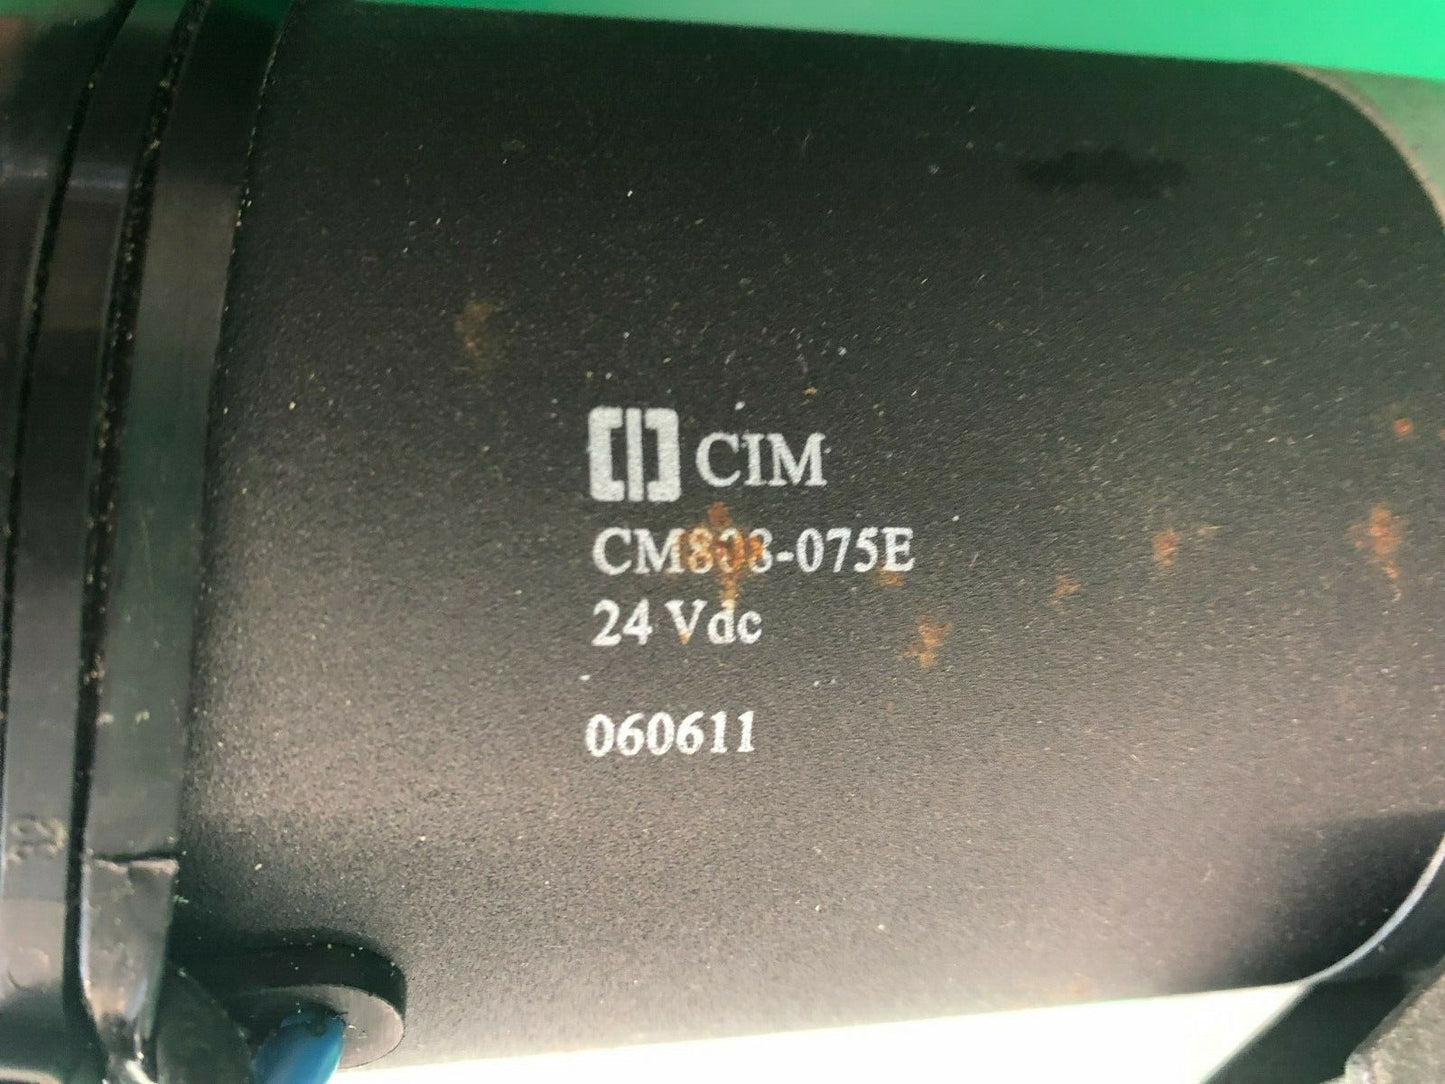 Left & Right Motors for Hoveround MPV5 R CIM1107993 / L CIM1107993 #H491